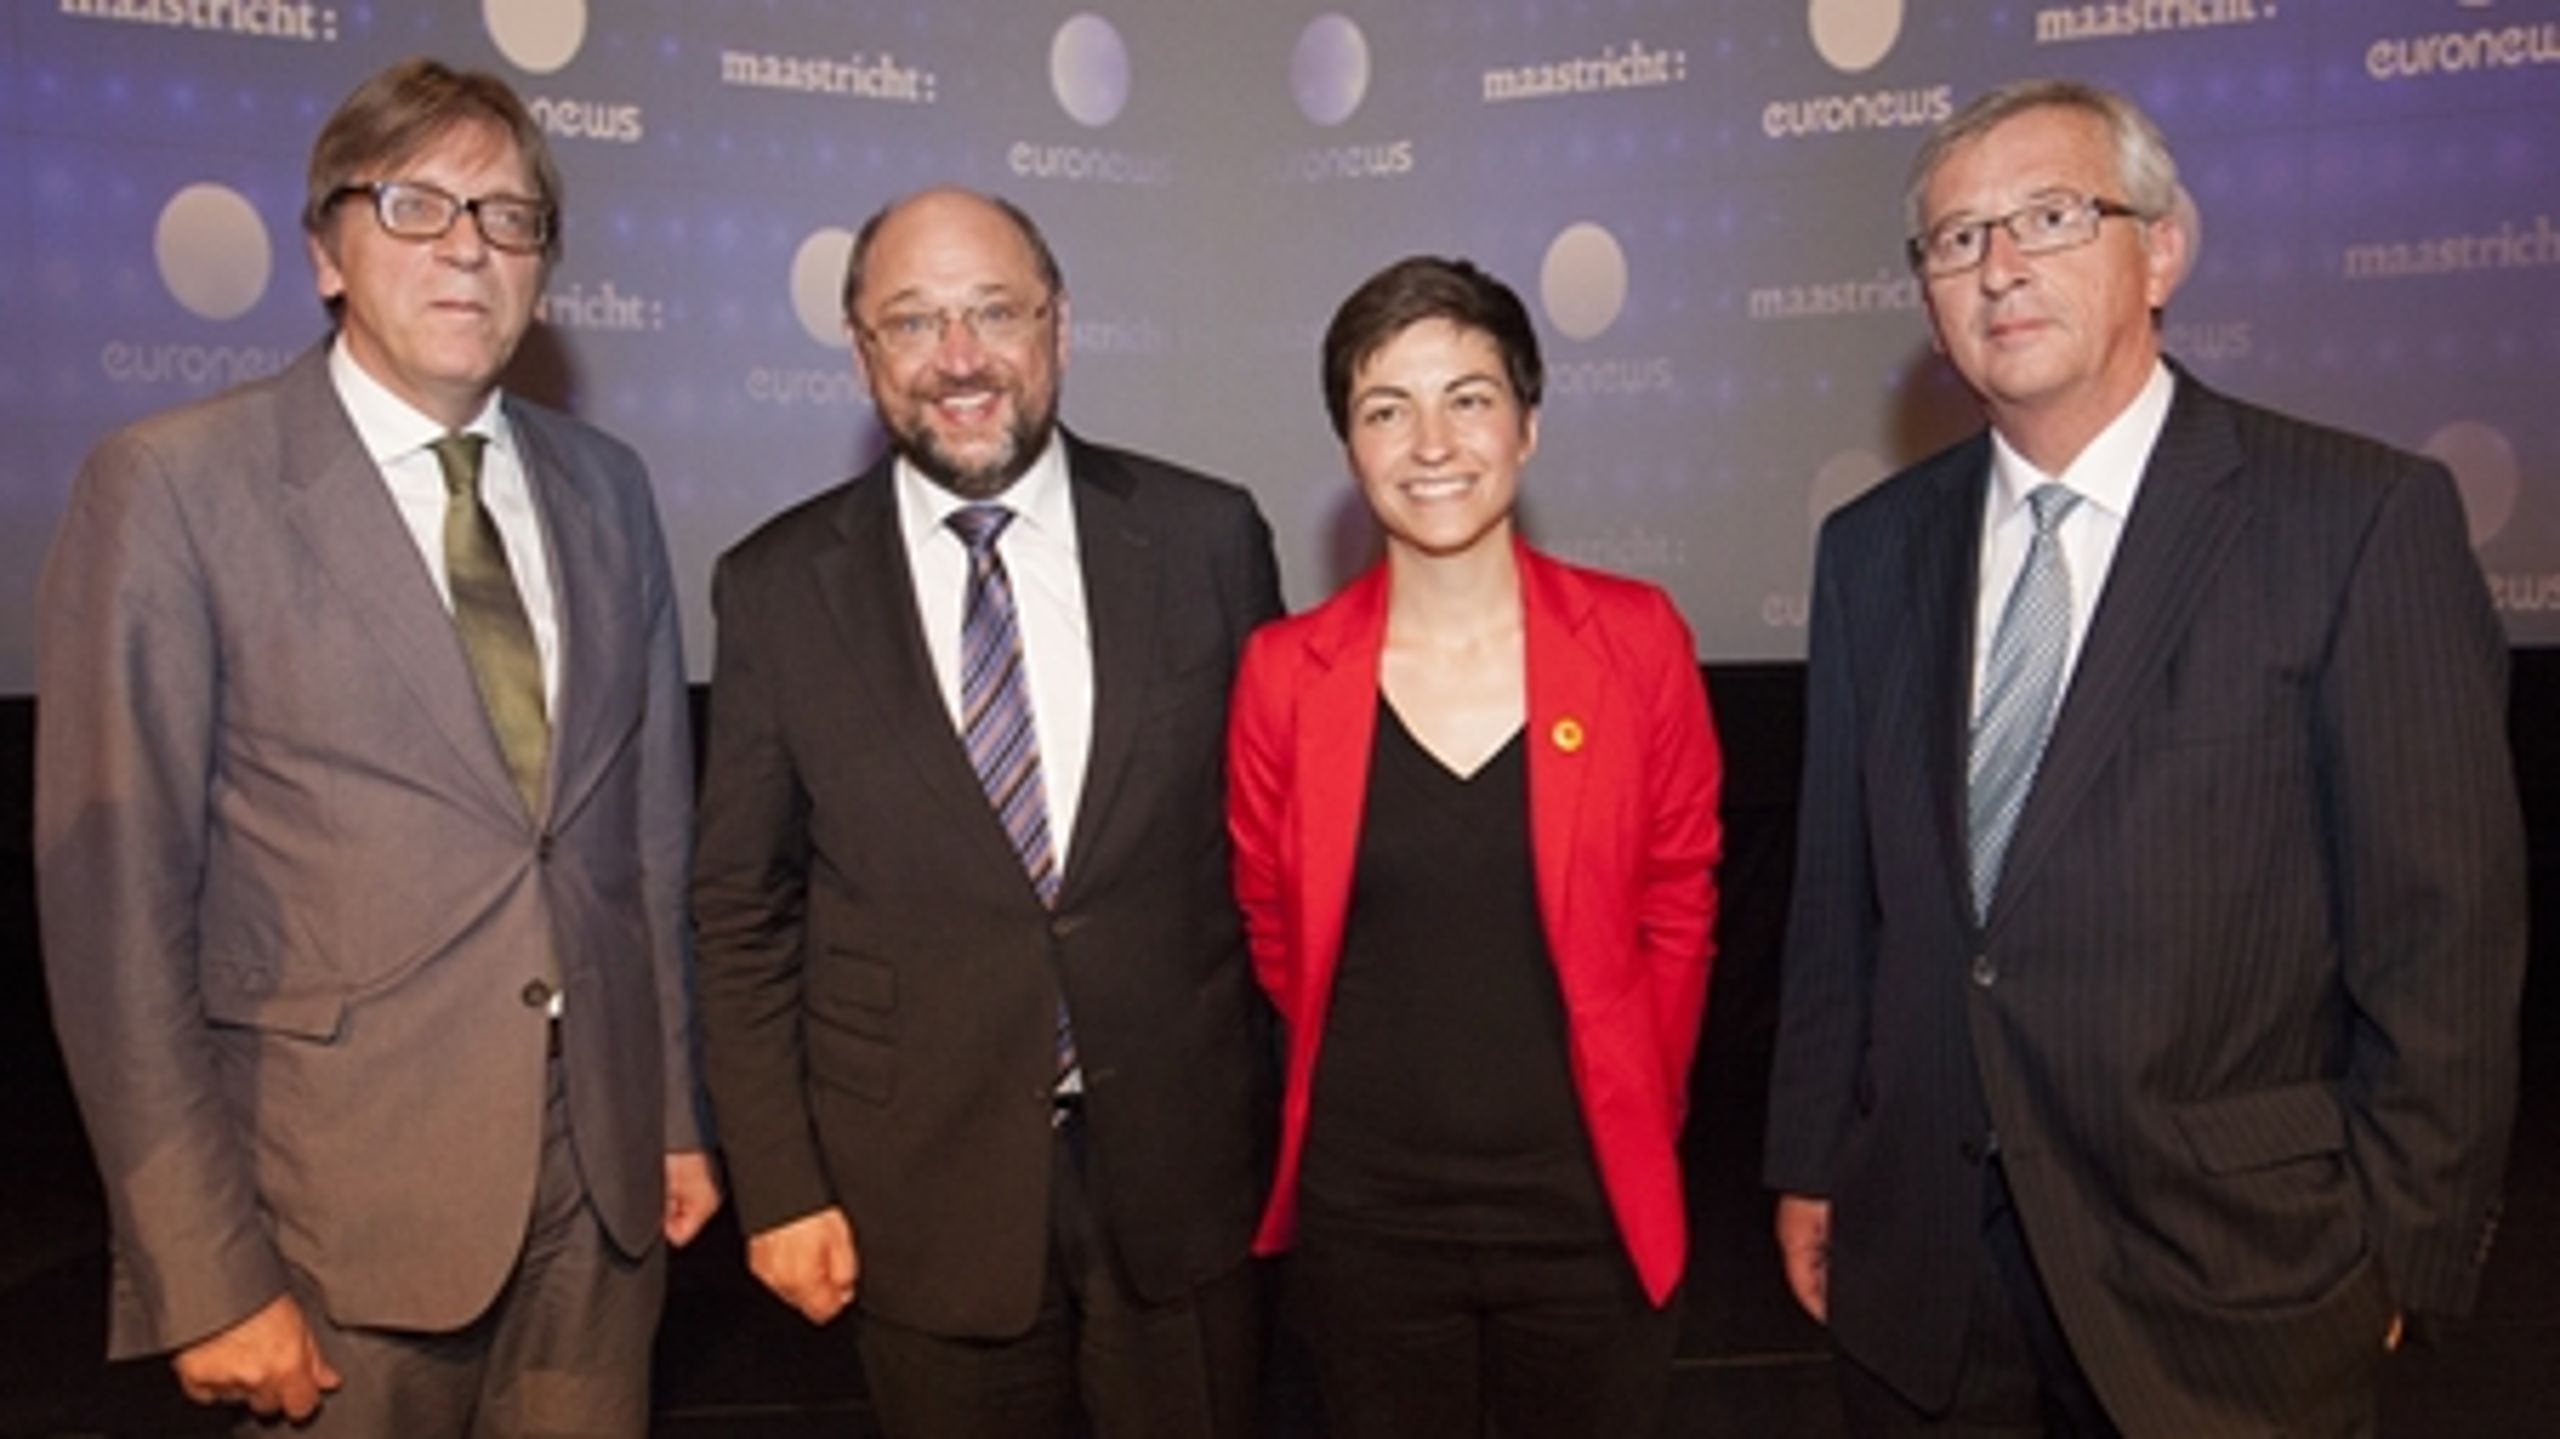 Fire af de europæiske partiers spidskandidater til posten som formand for EU-Kommissionen, som danskerne har svært ved at genkende. Fra venstre er det den liberale Guy Verhofstadt, socialdemokratiske Martin Schulz, den grønne gruppes Ska Keller og kristendemokratiske Jean Claude Juncker.  